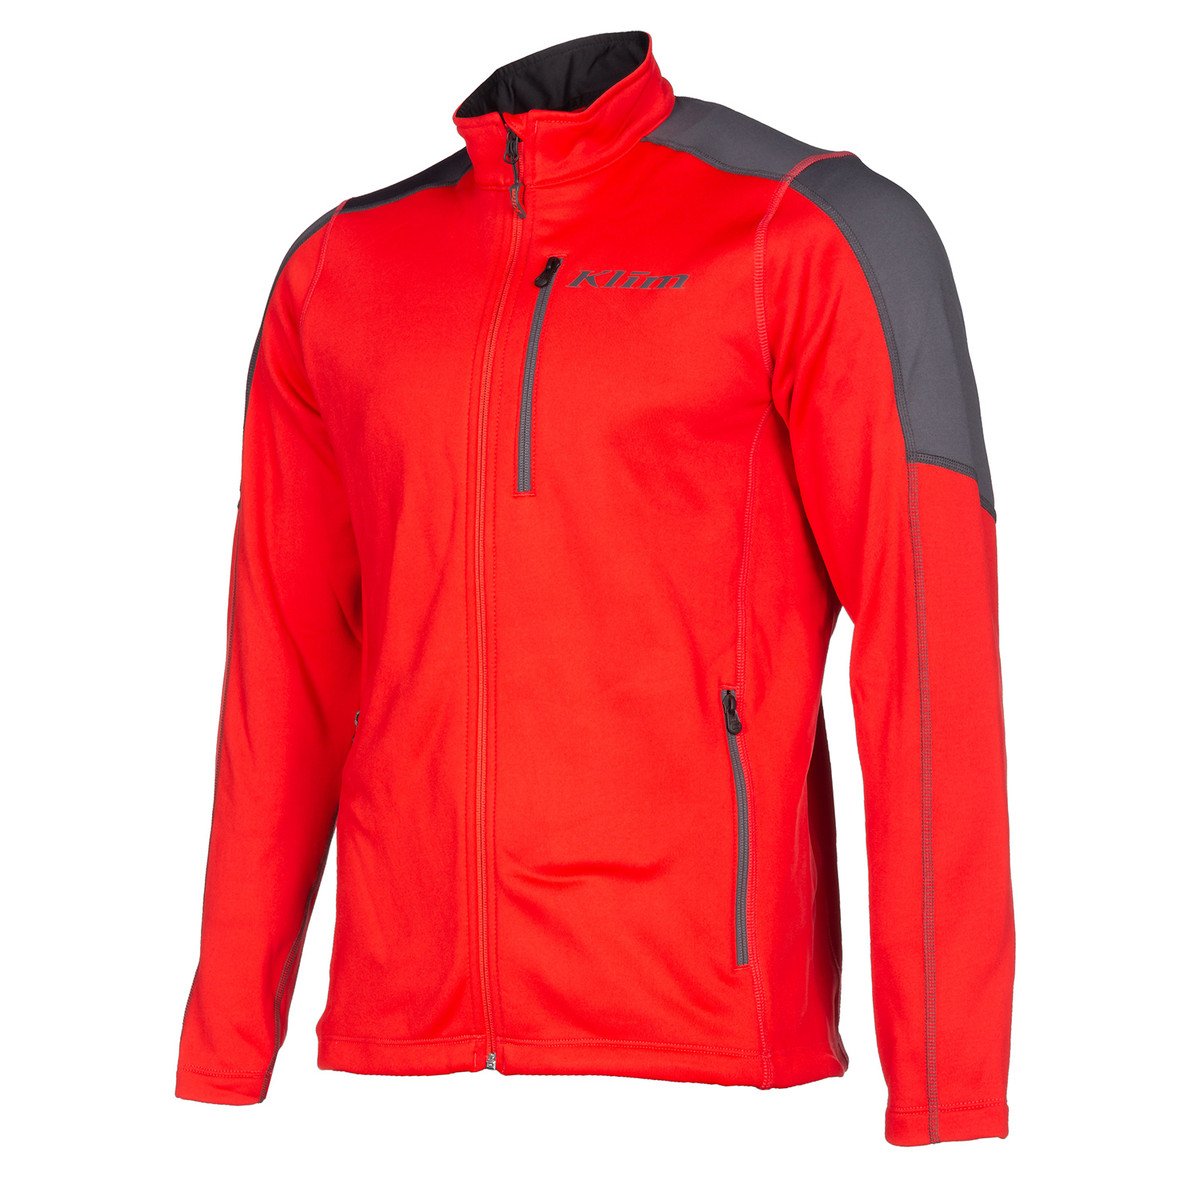 Image of Klim Inferno Jacket High Risk Red Asphalt Size M ID 0681573648228